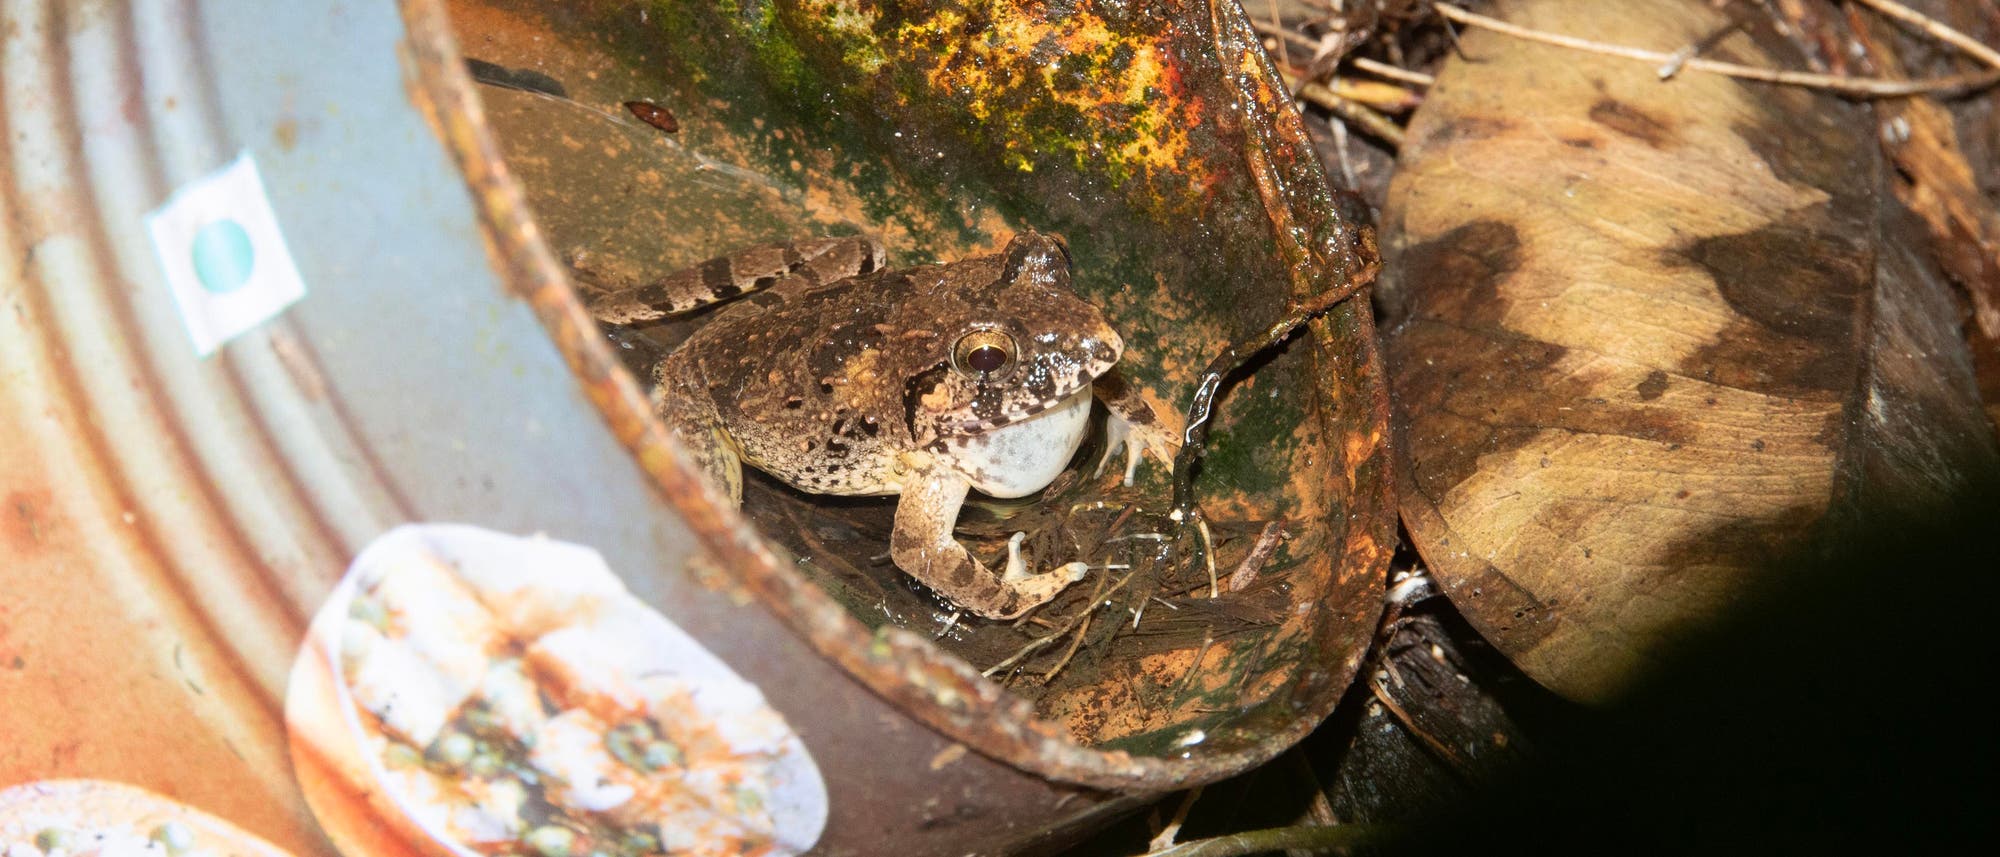 Ein bräunlicher Frosch sitzt in einer alten, teils verrosteten Blechbüchse, die teilweise mit Wasser gefüllt ist. Neben der Dose liegen verwelkte Blätter auf dem Boden.